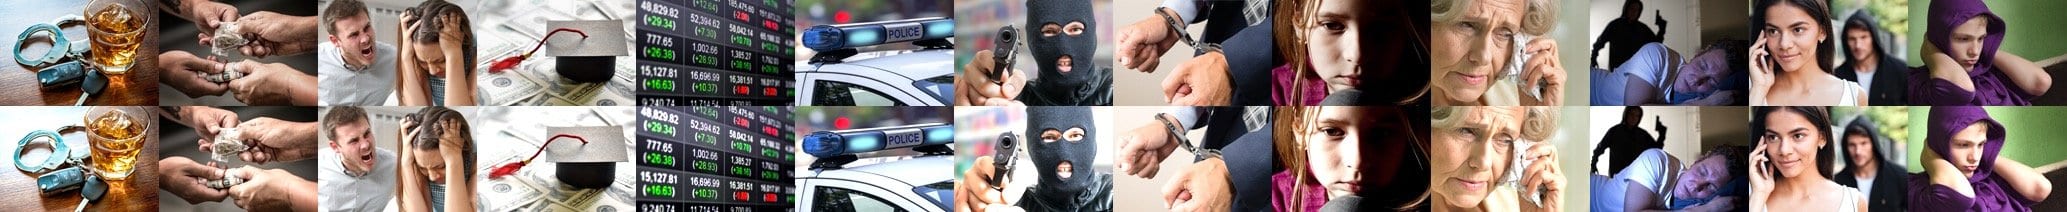 Violent/Theft Mischief Crimes